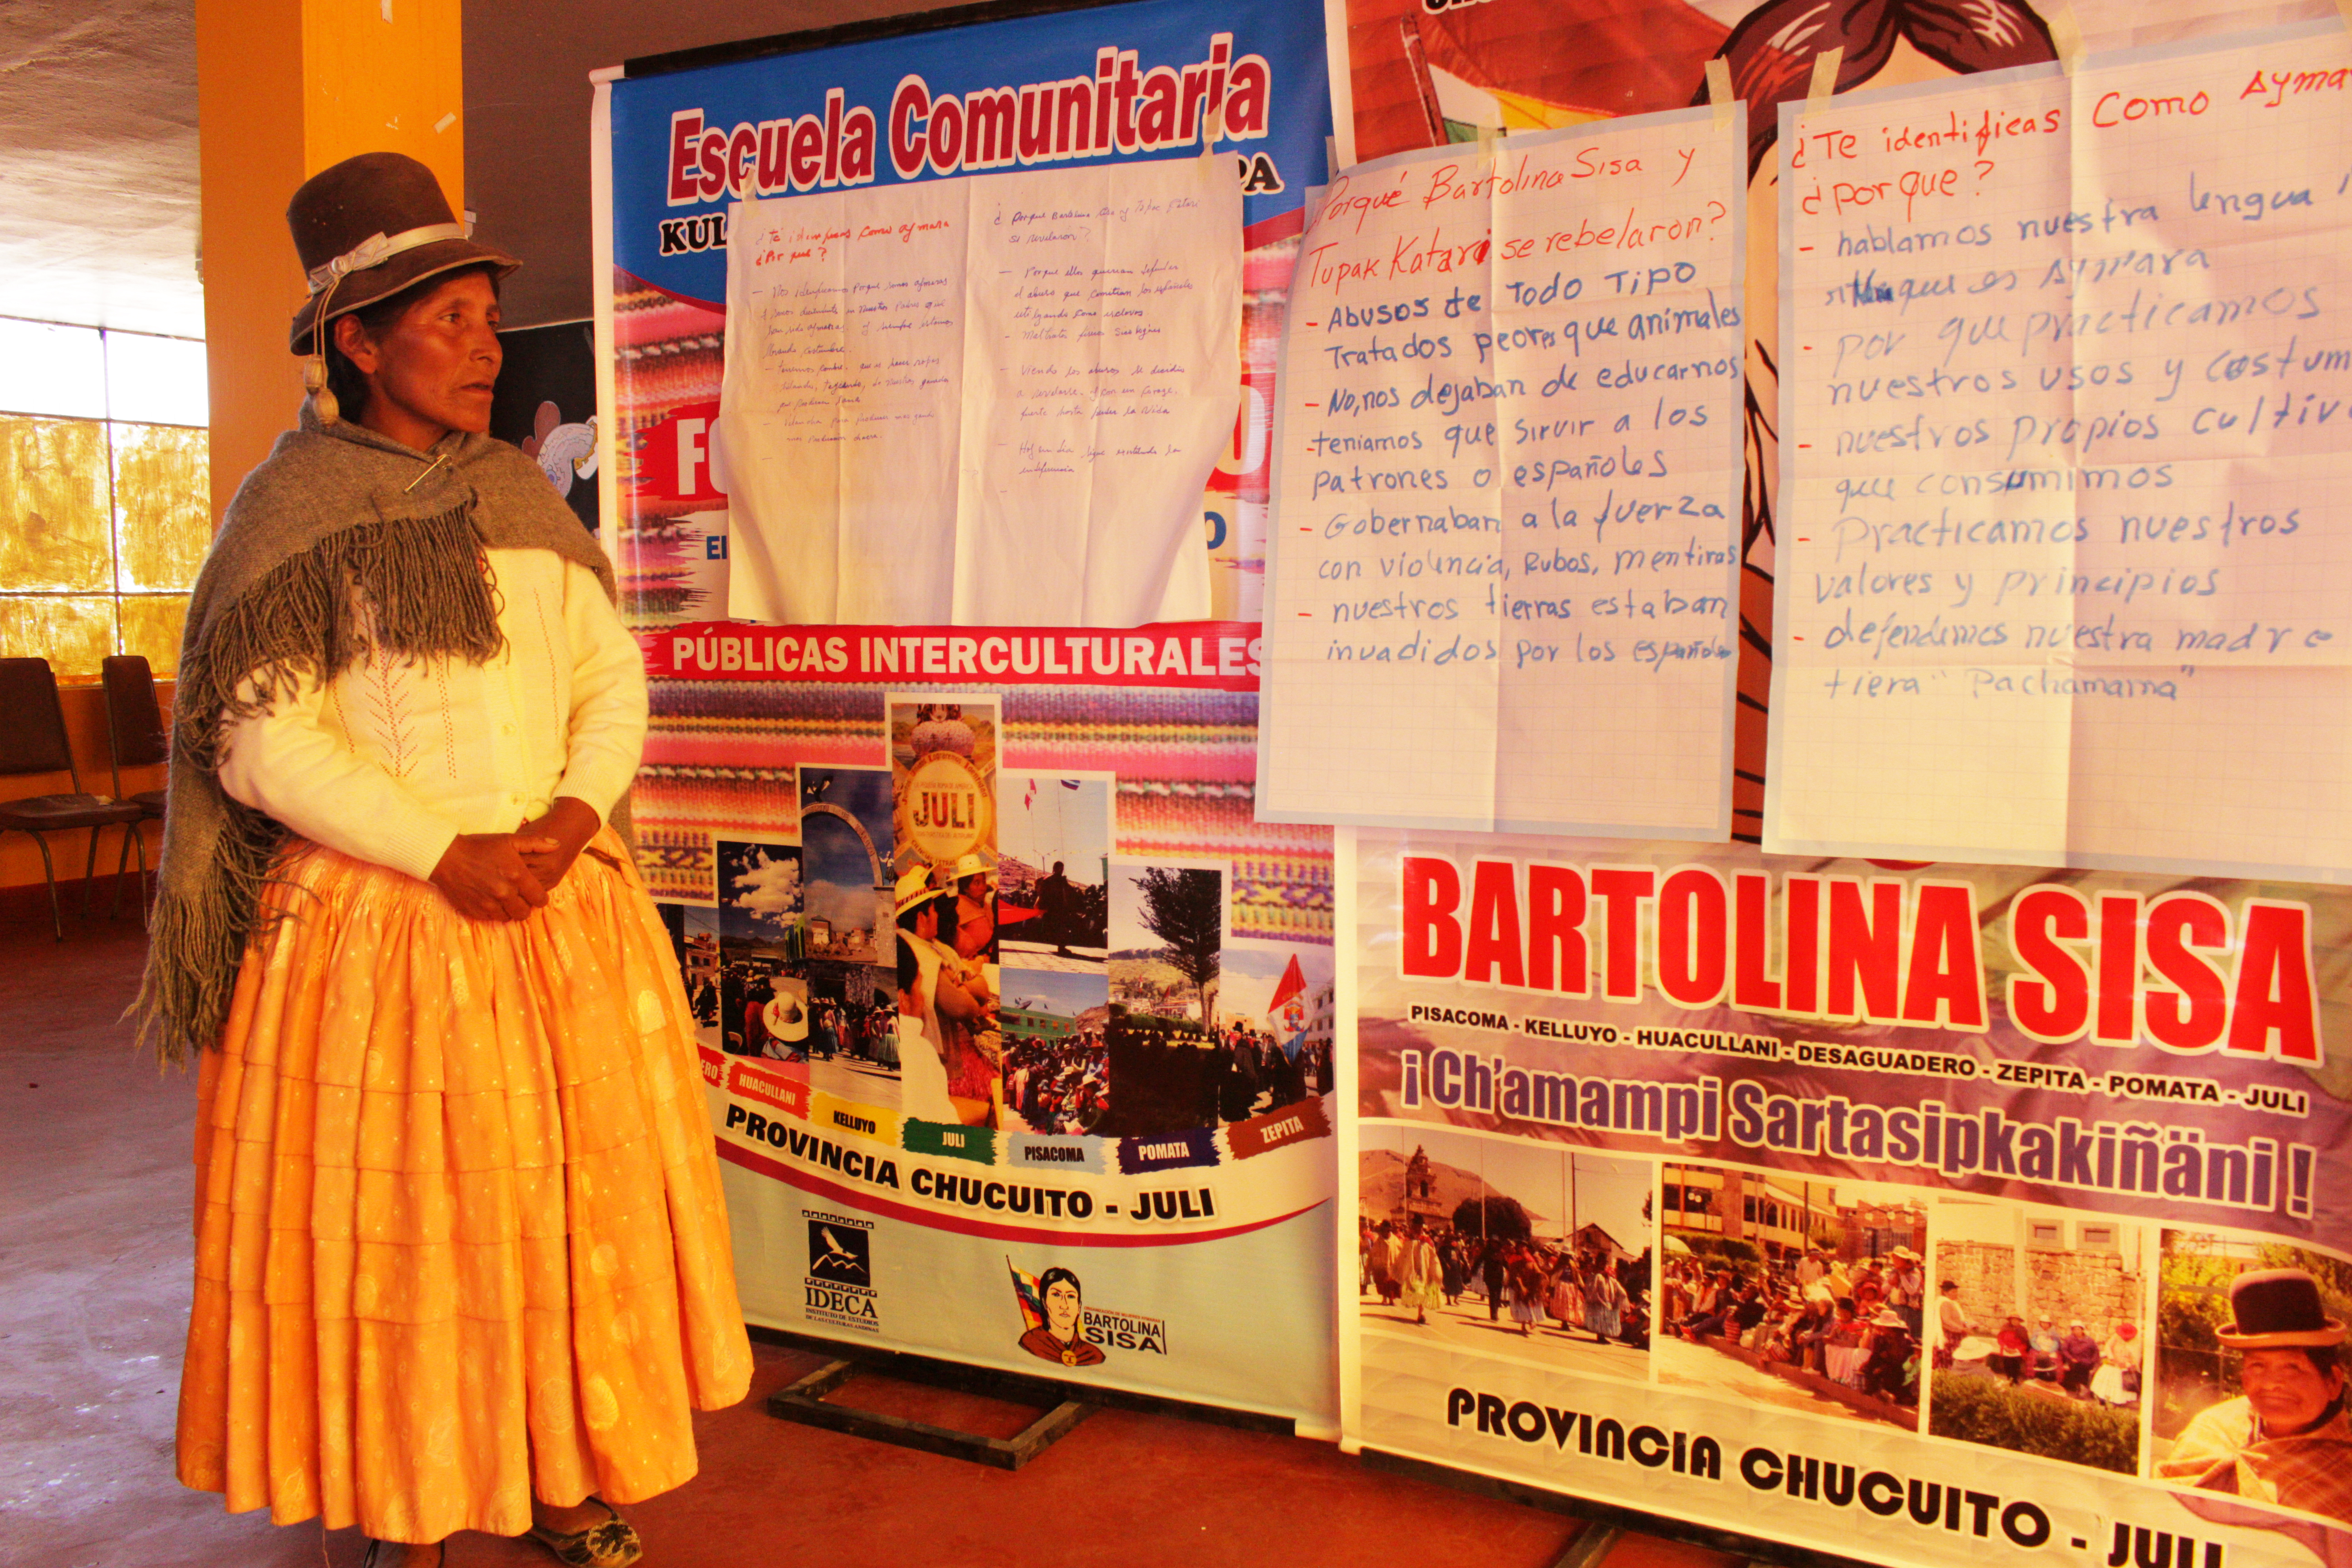 Primera autoridad del Distrito de Pisacoma saludó la labor que tiene la Escuela Comunitaria con las mujeres y la cultura